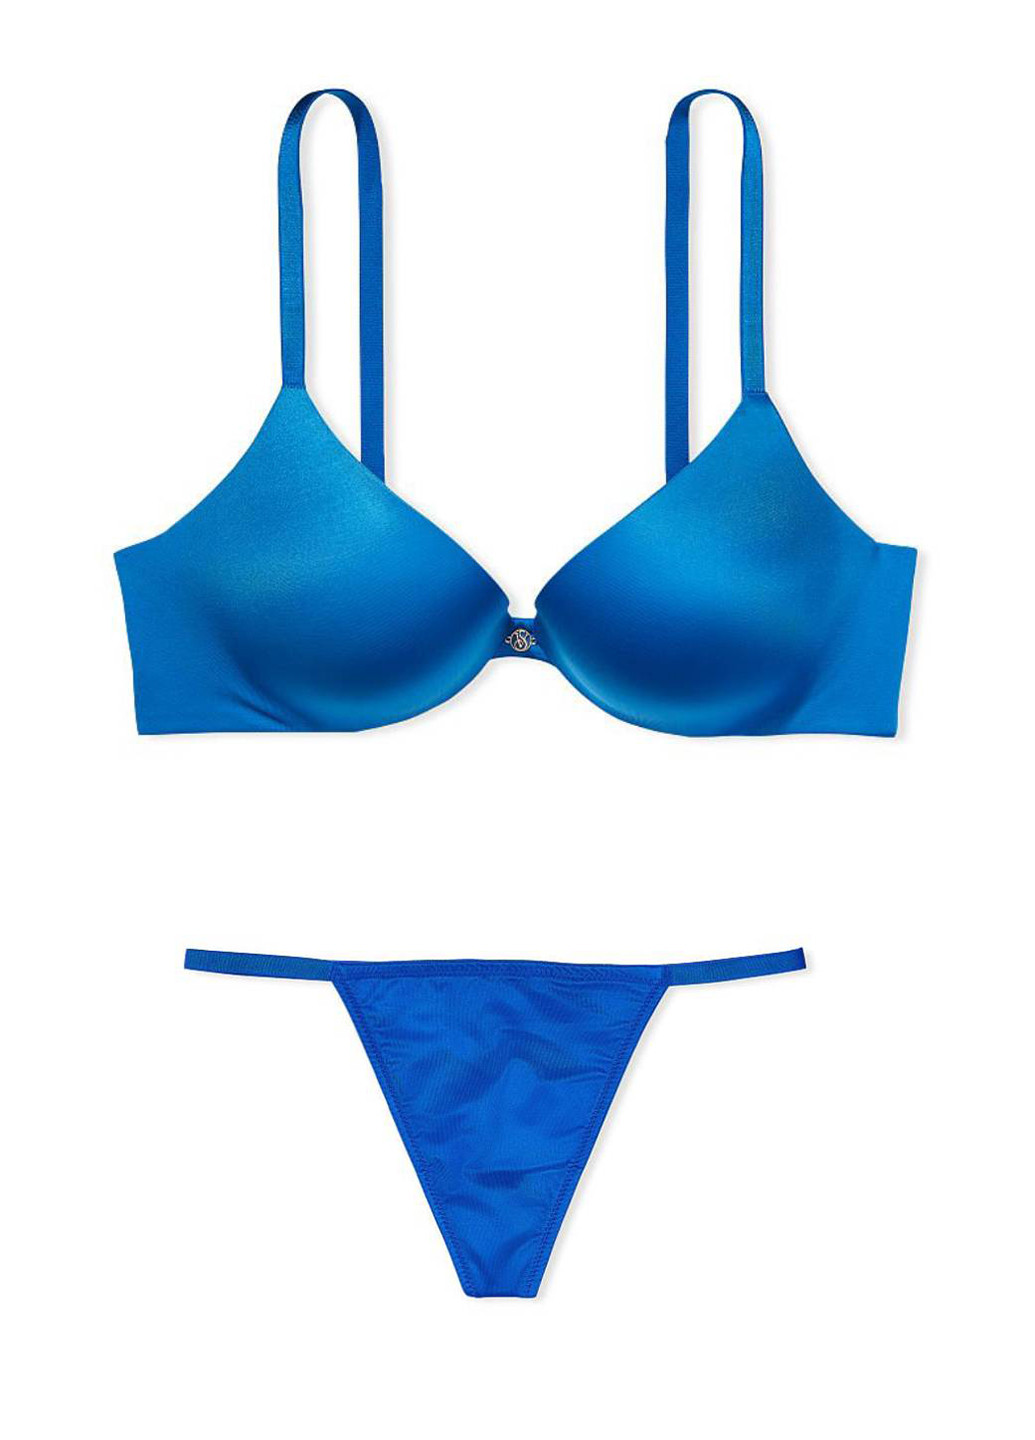 Синий демисезонный комплект (бюстгальтер, трусики) Victoria's Secret